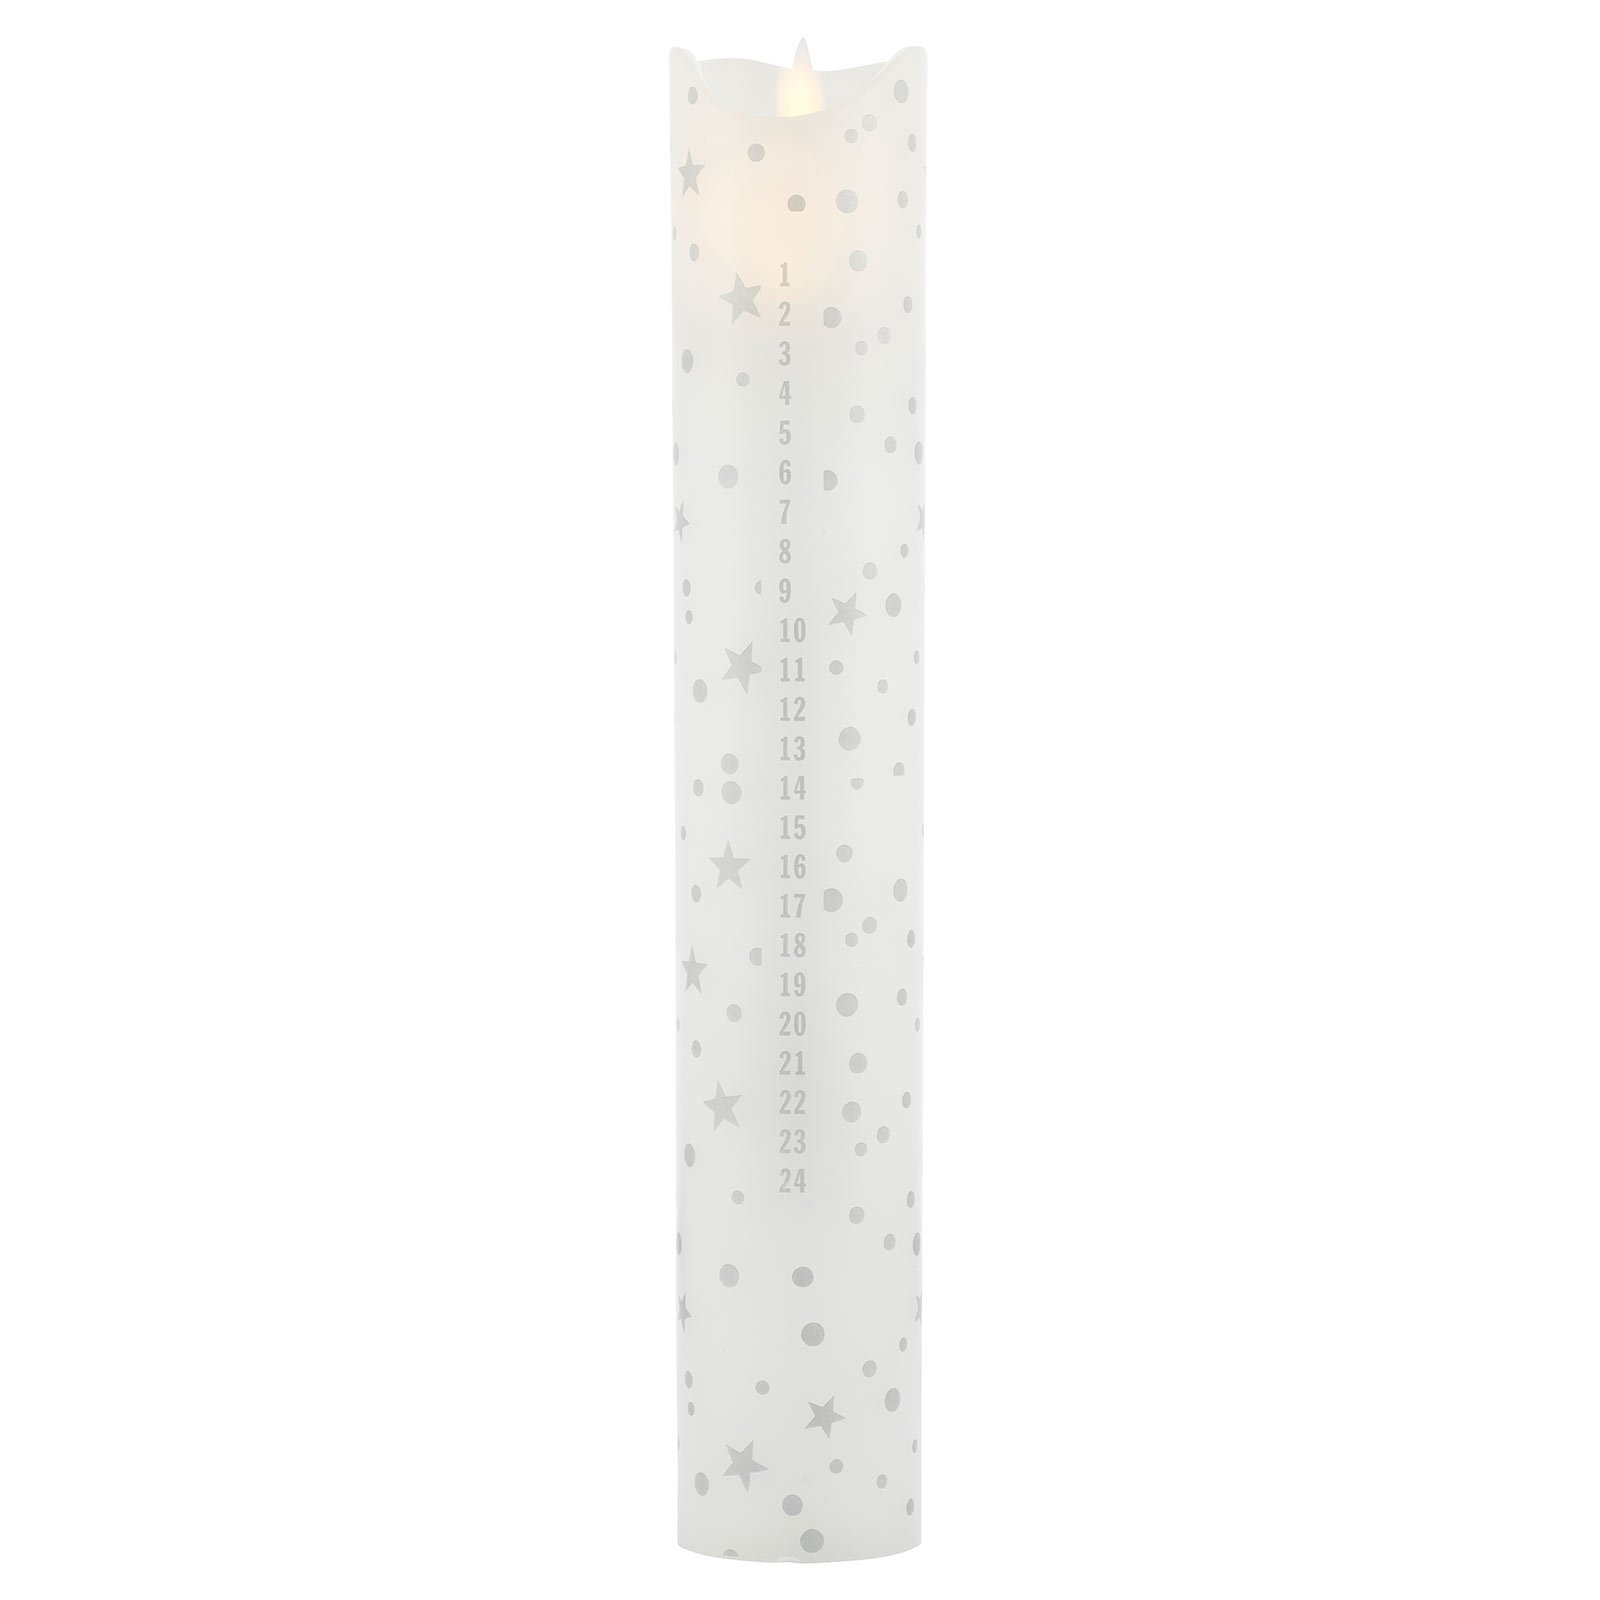 Świeczka LED Sara Calendar, biały/romantyczny, wysokość 29 cm